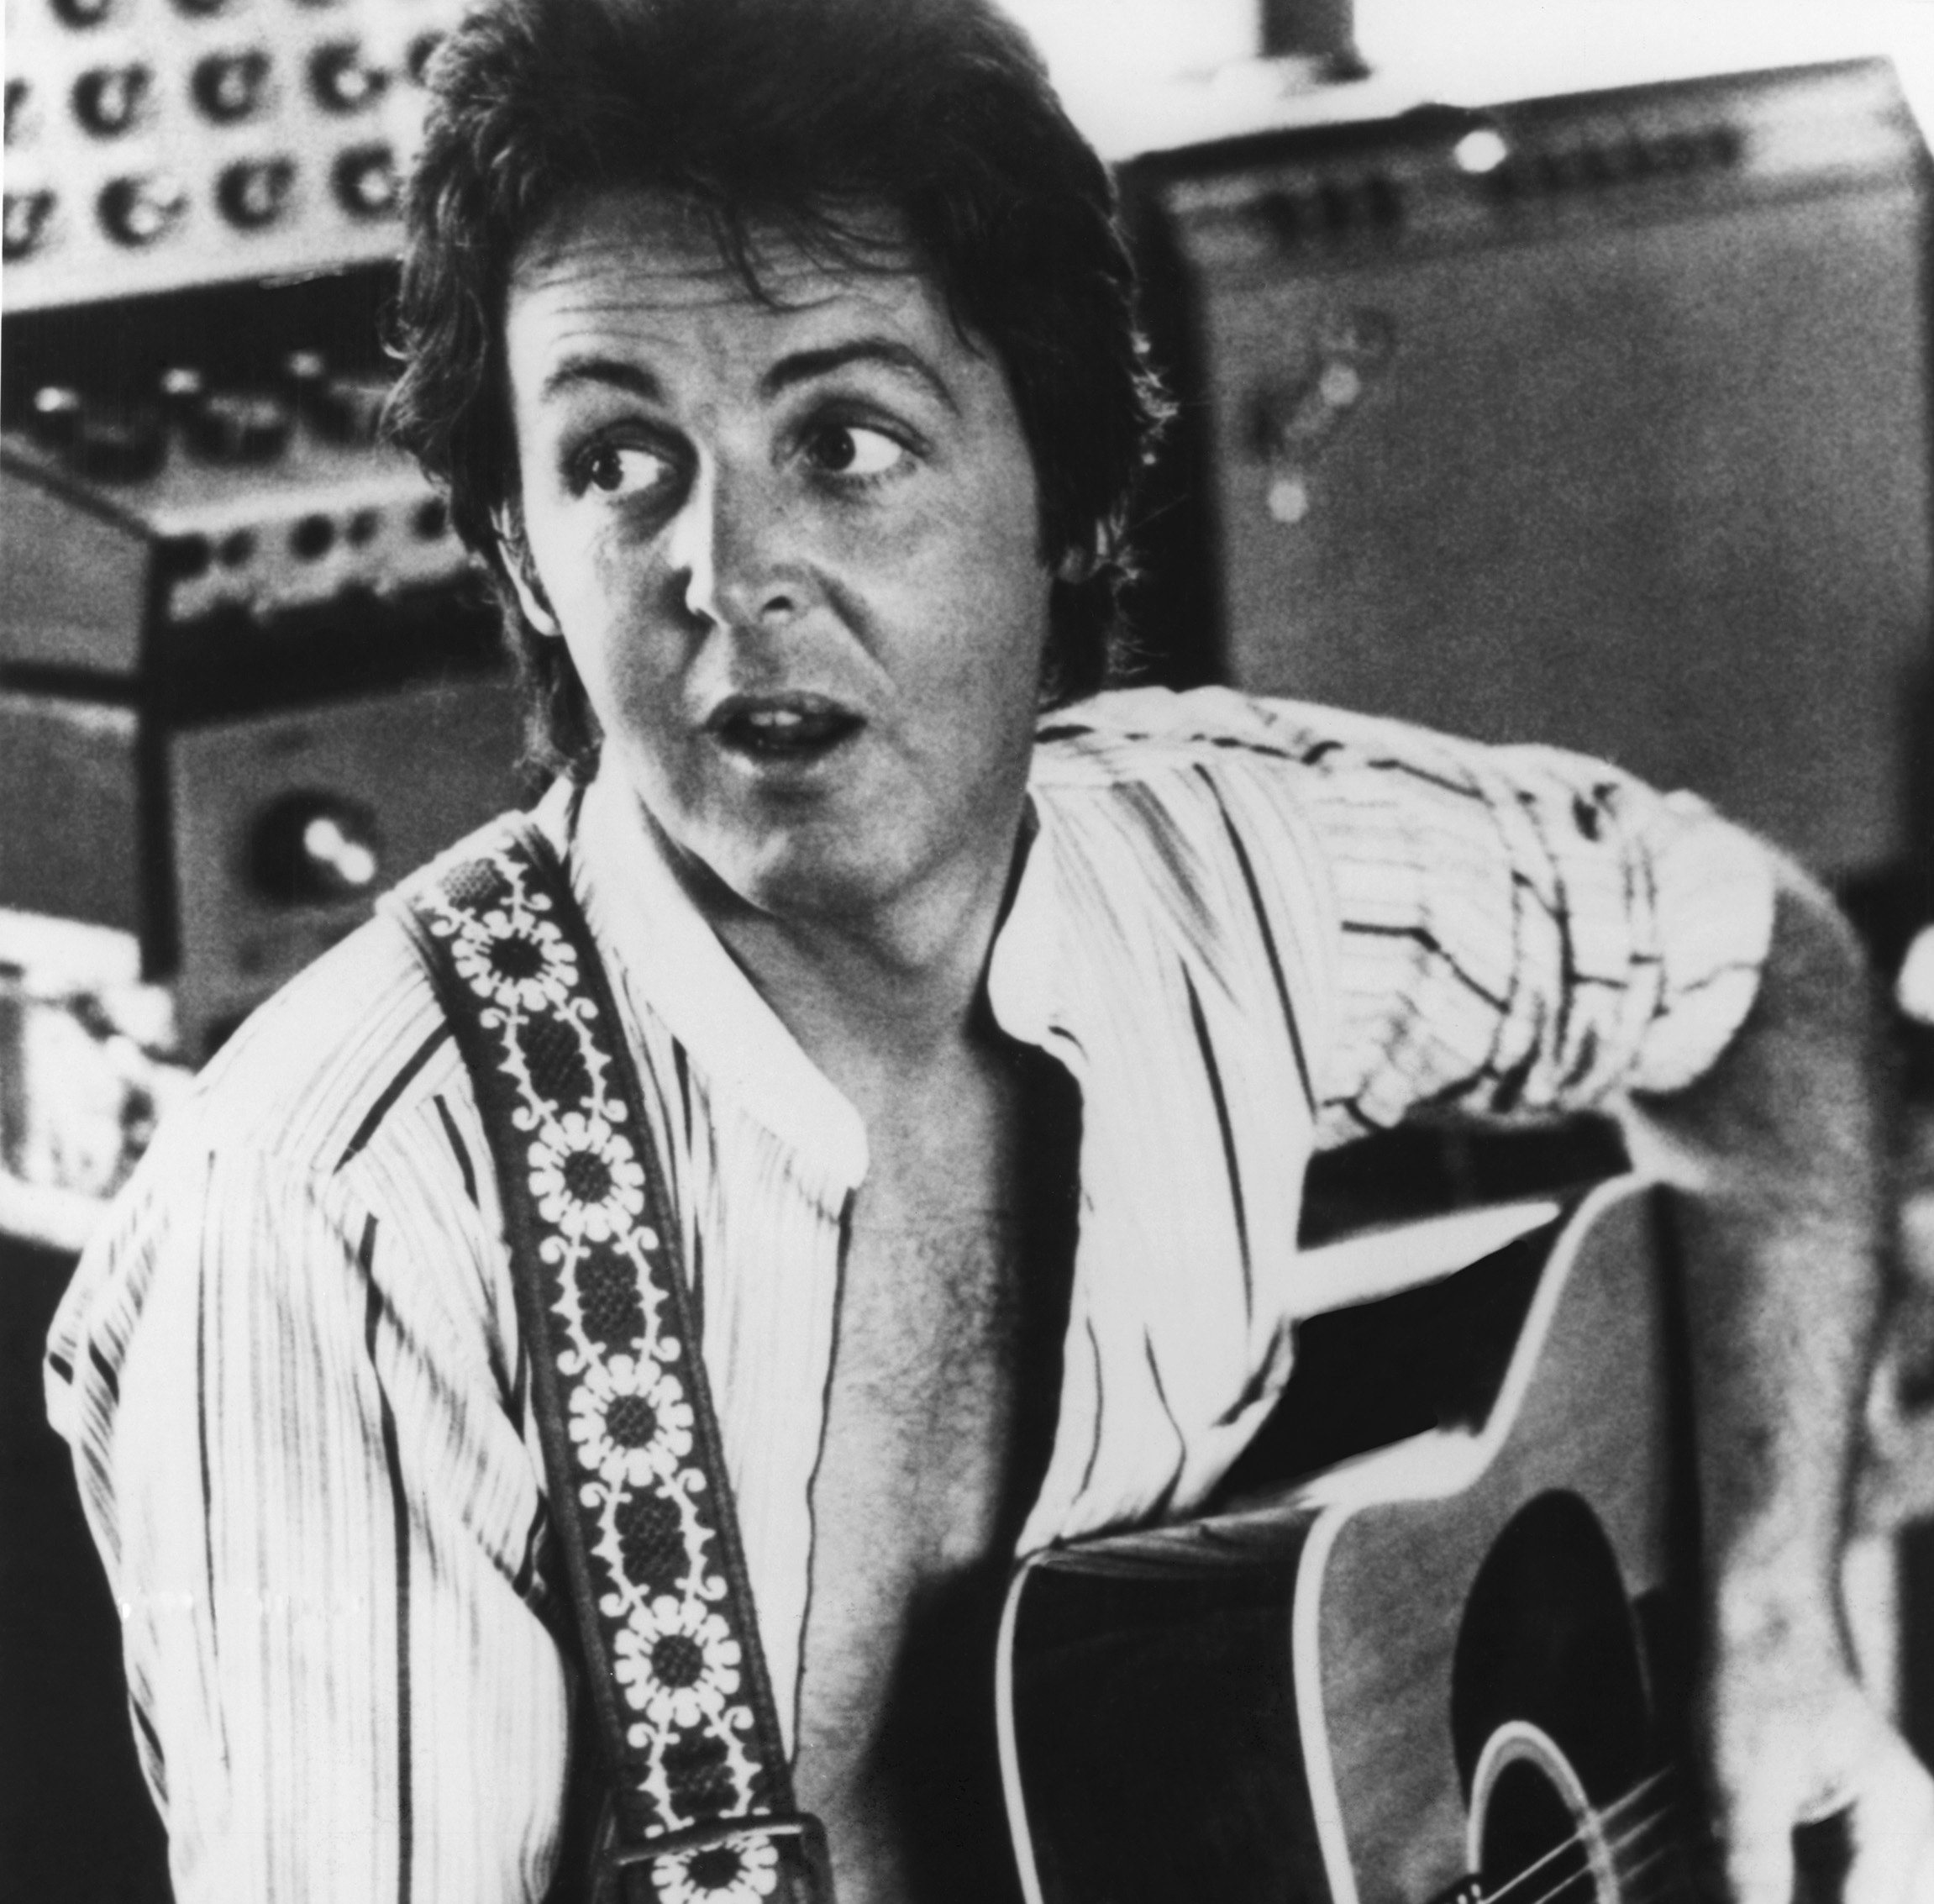 Paul McCartney with a guitar